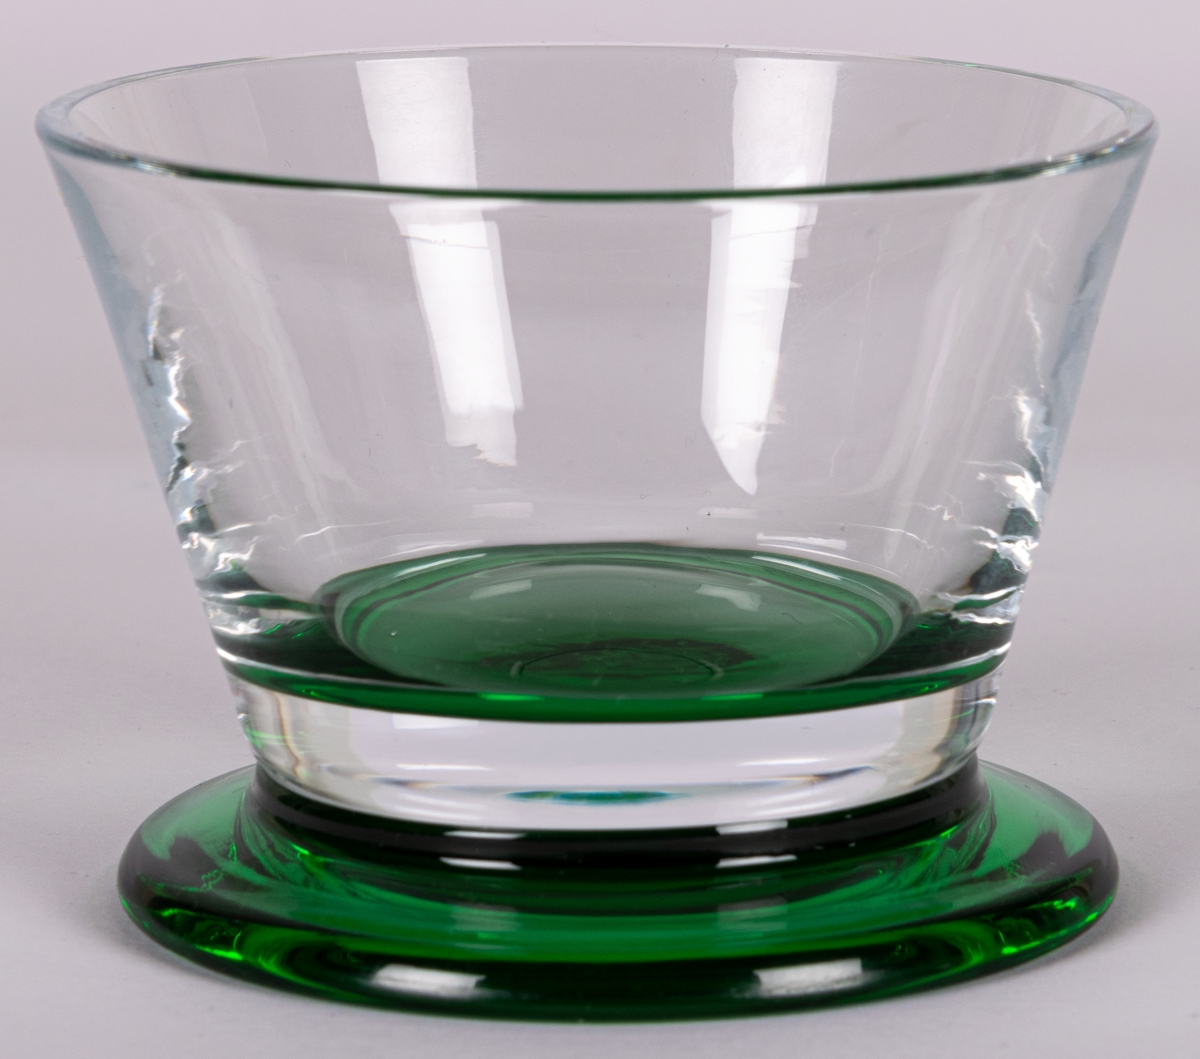 Sockerskålar, 2 st. Raka, utåtlutande sidor i ofärgat glas på låg, utkragad fot i grönt glas. Design Gunnar Cyrén för Orrefors Glasbruk.